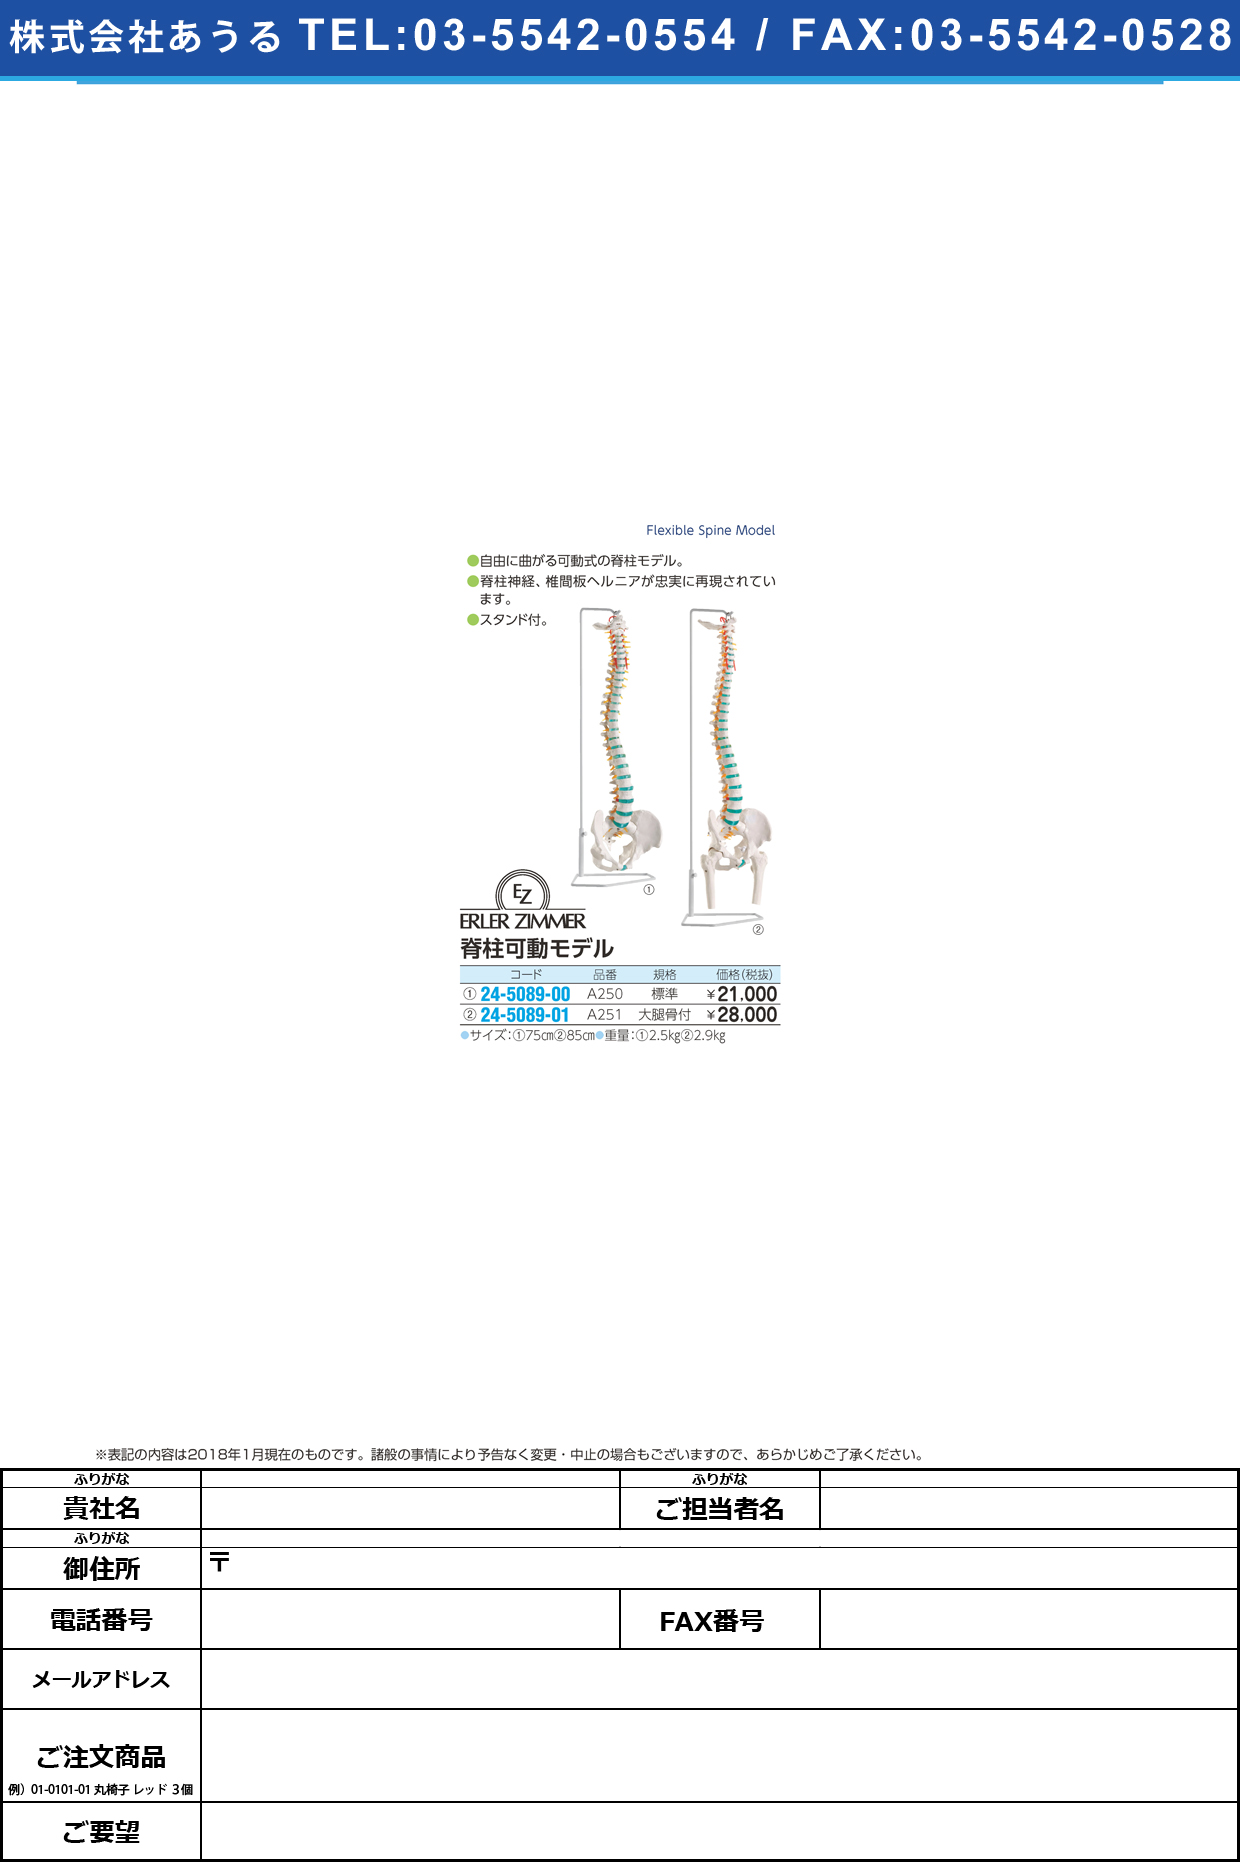 (24-5089-01)脊柱可動モデル（大腿骨付） A251 ｾｷﾁｭｳｶﾄﾞｳﾓﾃﾞﾙ(ﾀﾞｲﾀｲｺ(エルラージーマー社)【1個単位】【2019年カタログ商品】